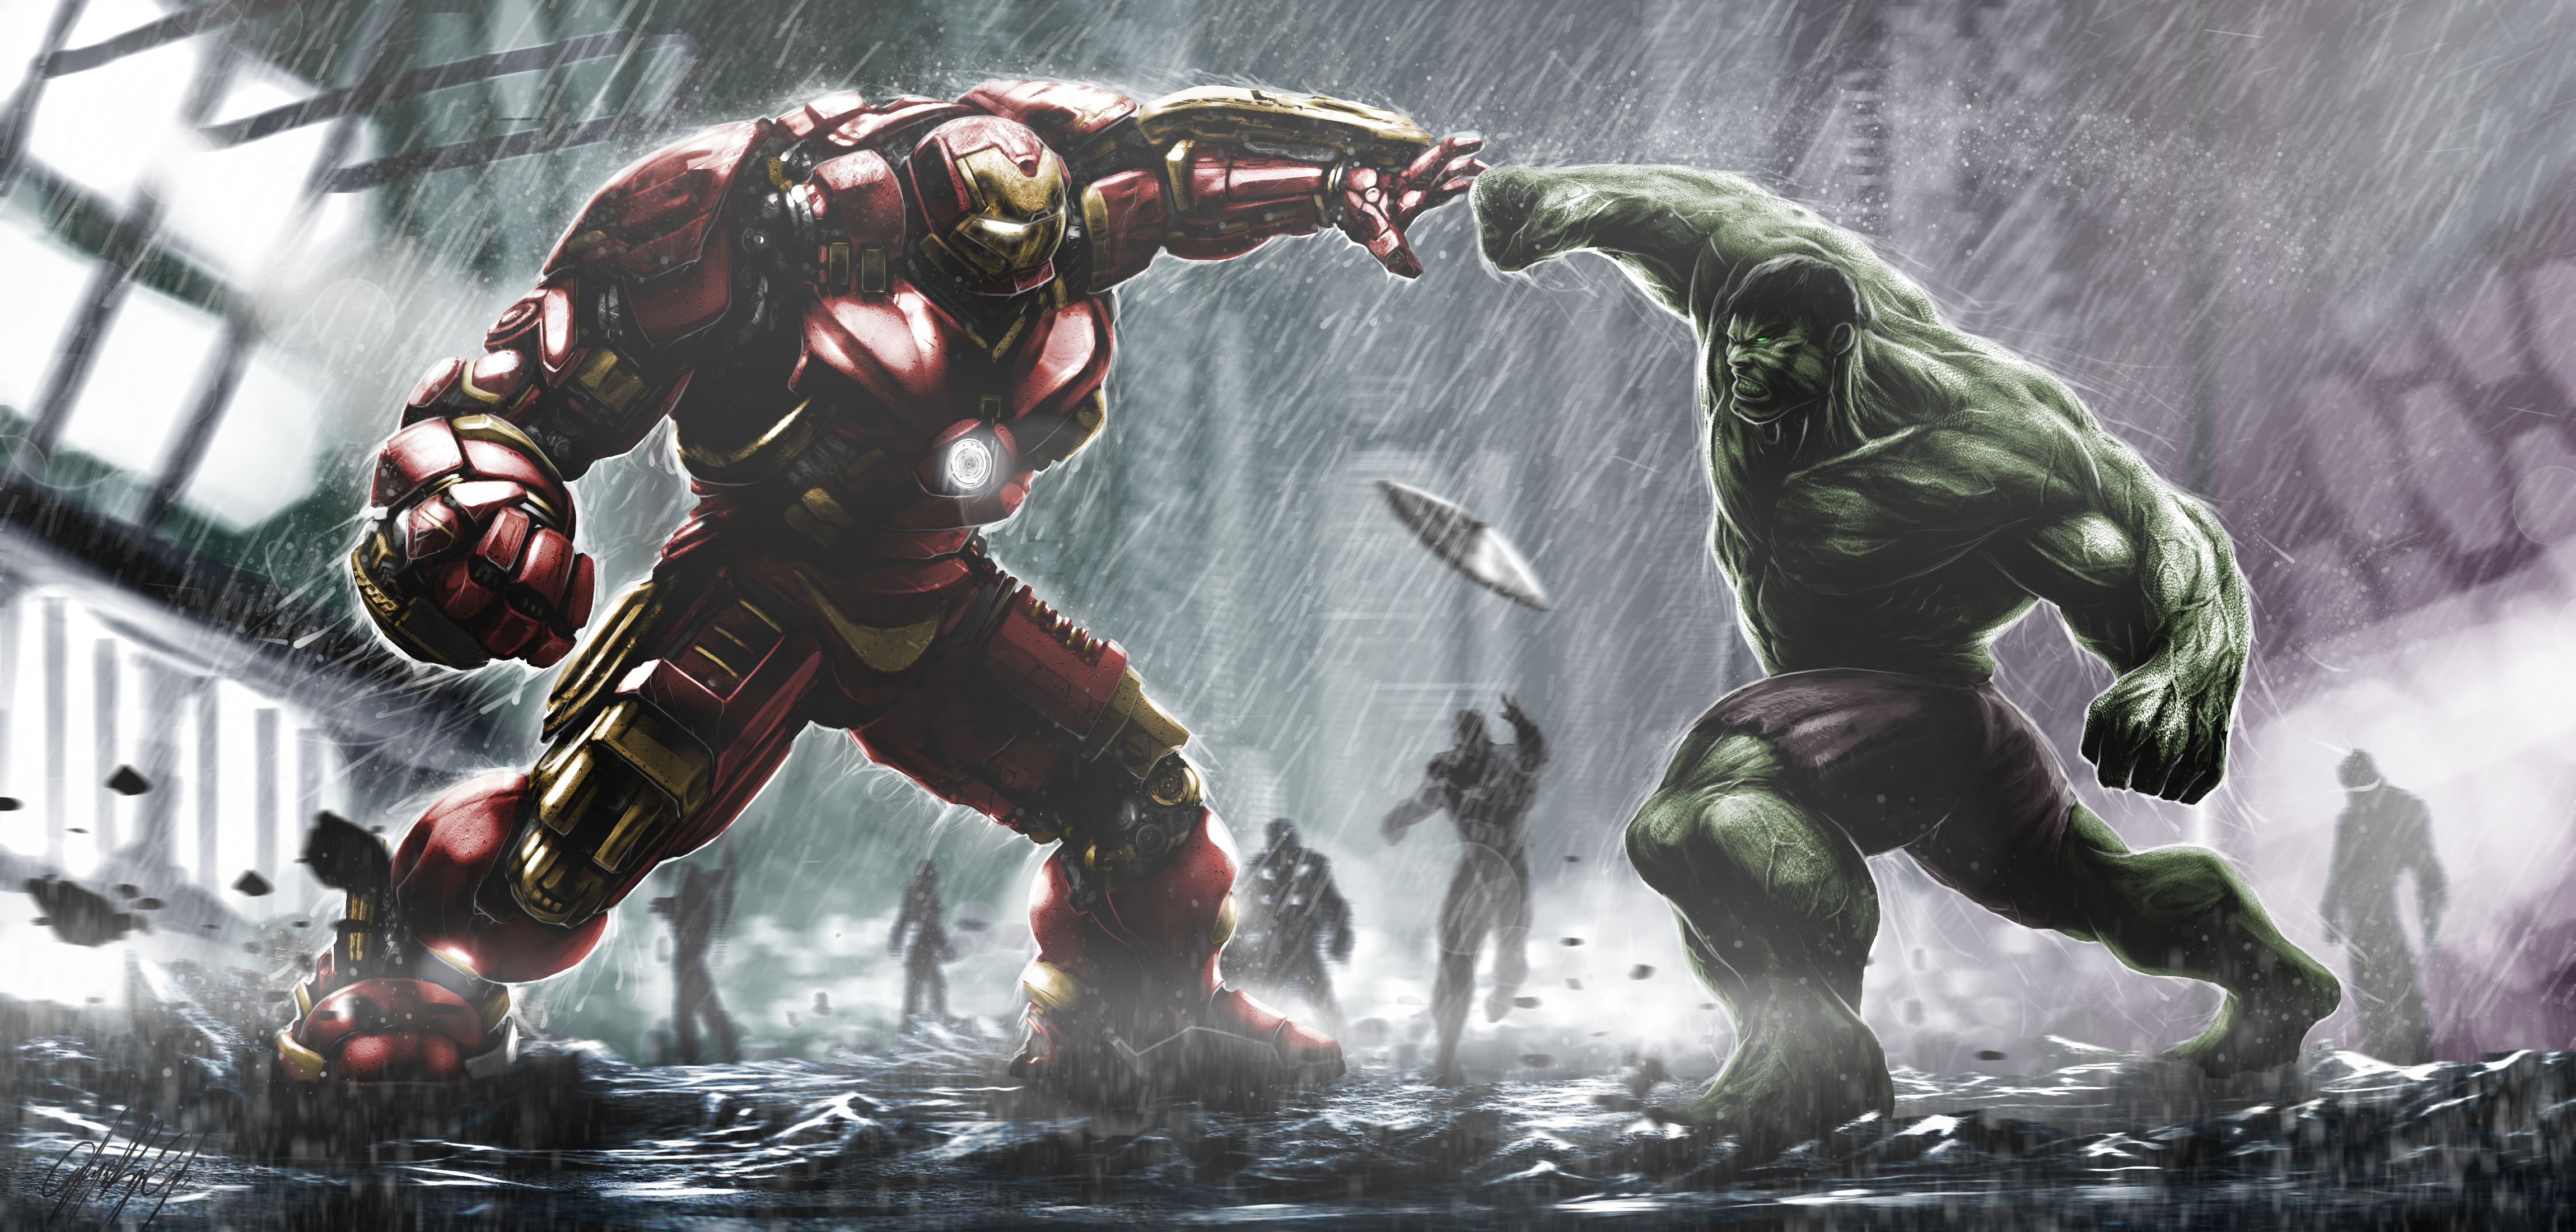 Avengers Age Of Ultron Hulk Hulkbuster 4600x2200